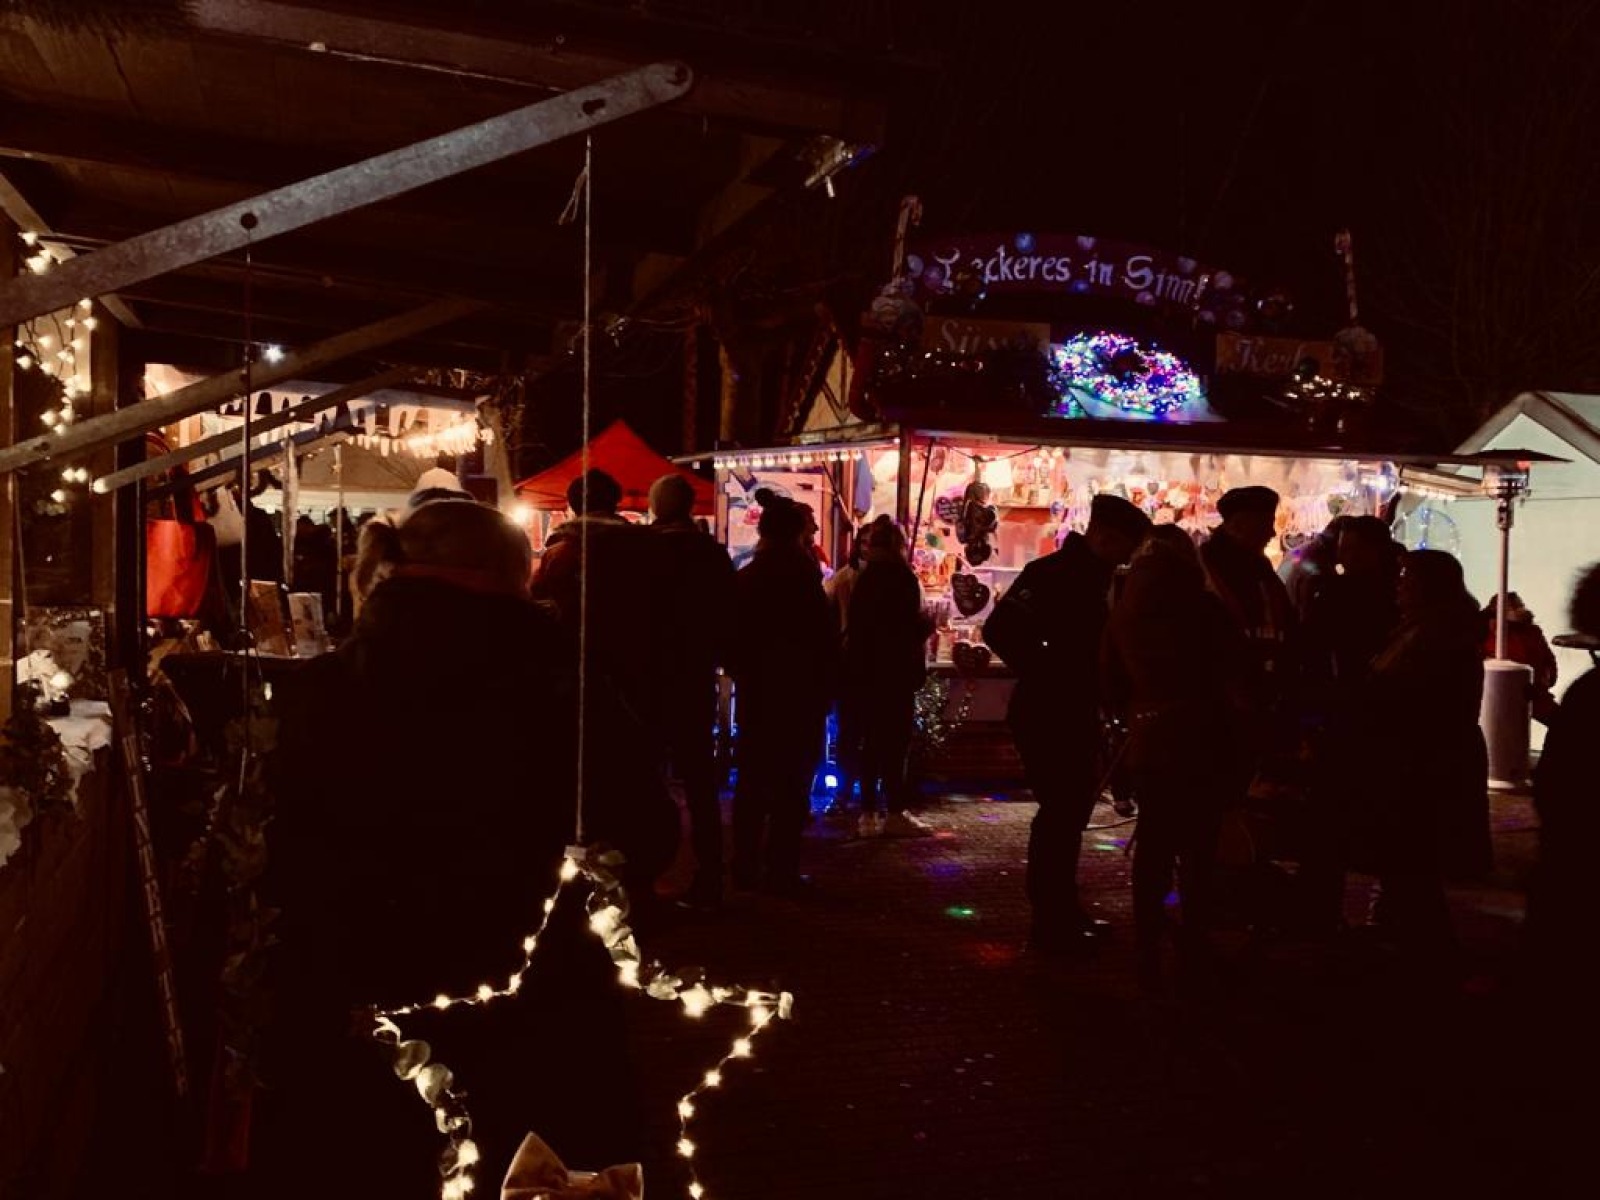 Allées du marché de Noël avec les chalets en bois illuminés